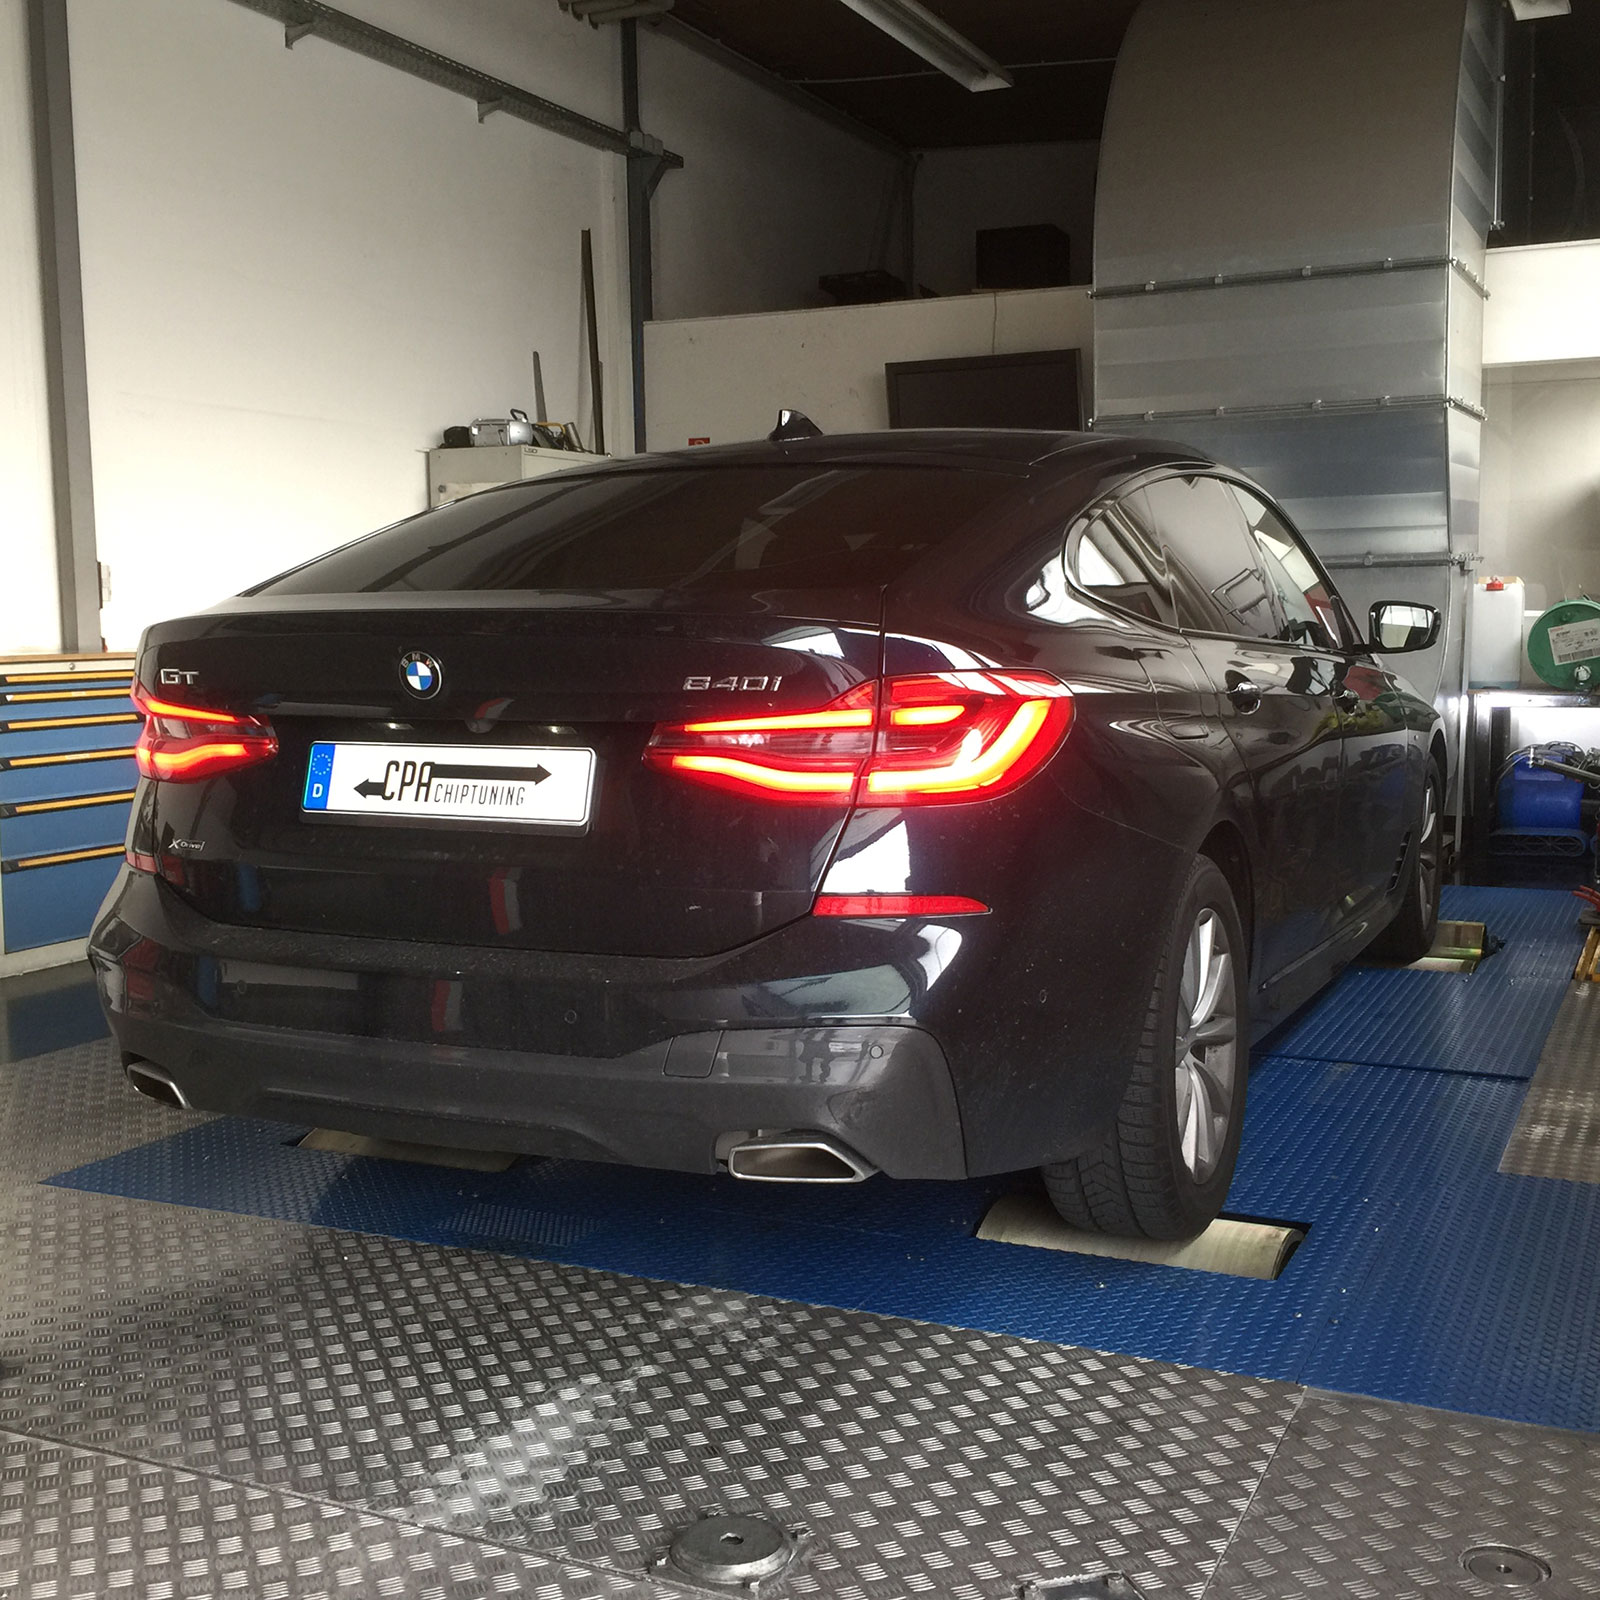 Chiptuning BMW: utvecklat i provningen